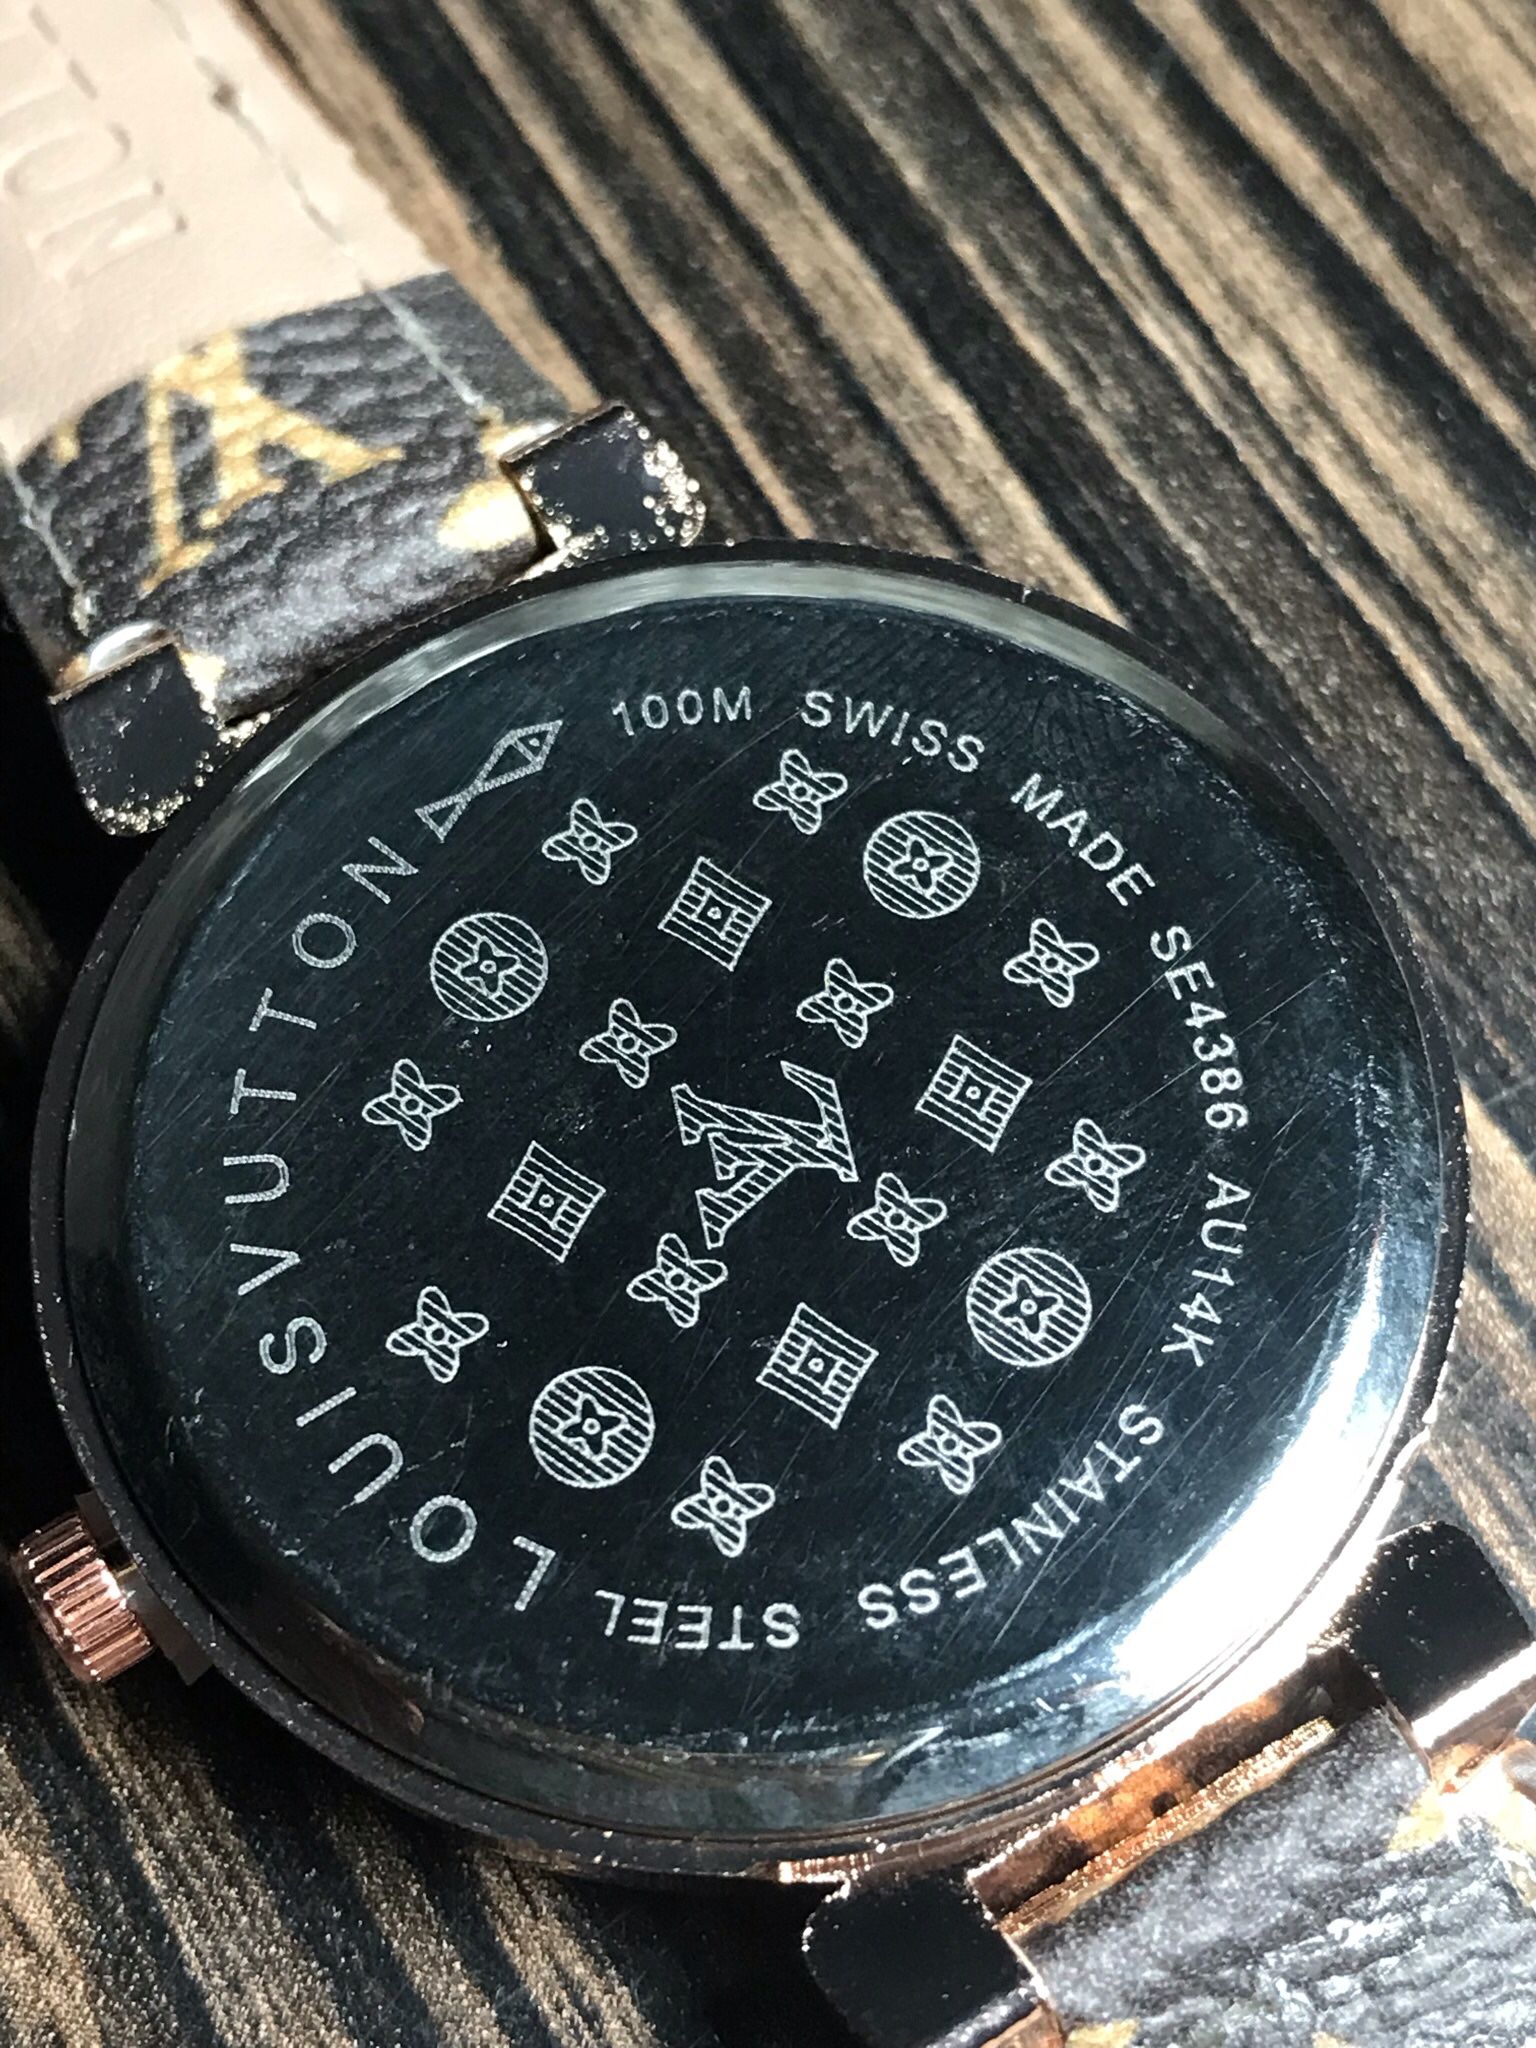 Louis Vuitton Paris Vintage Watch for Sale in Miami, FL - OfferUp